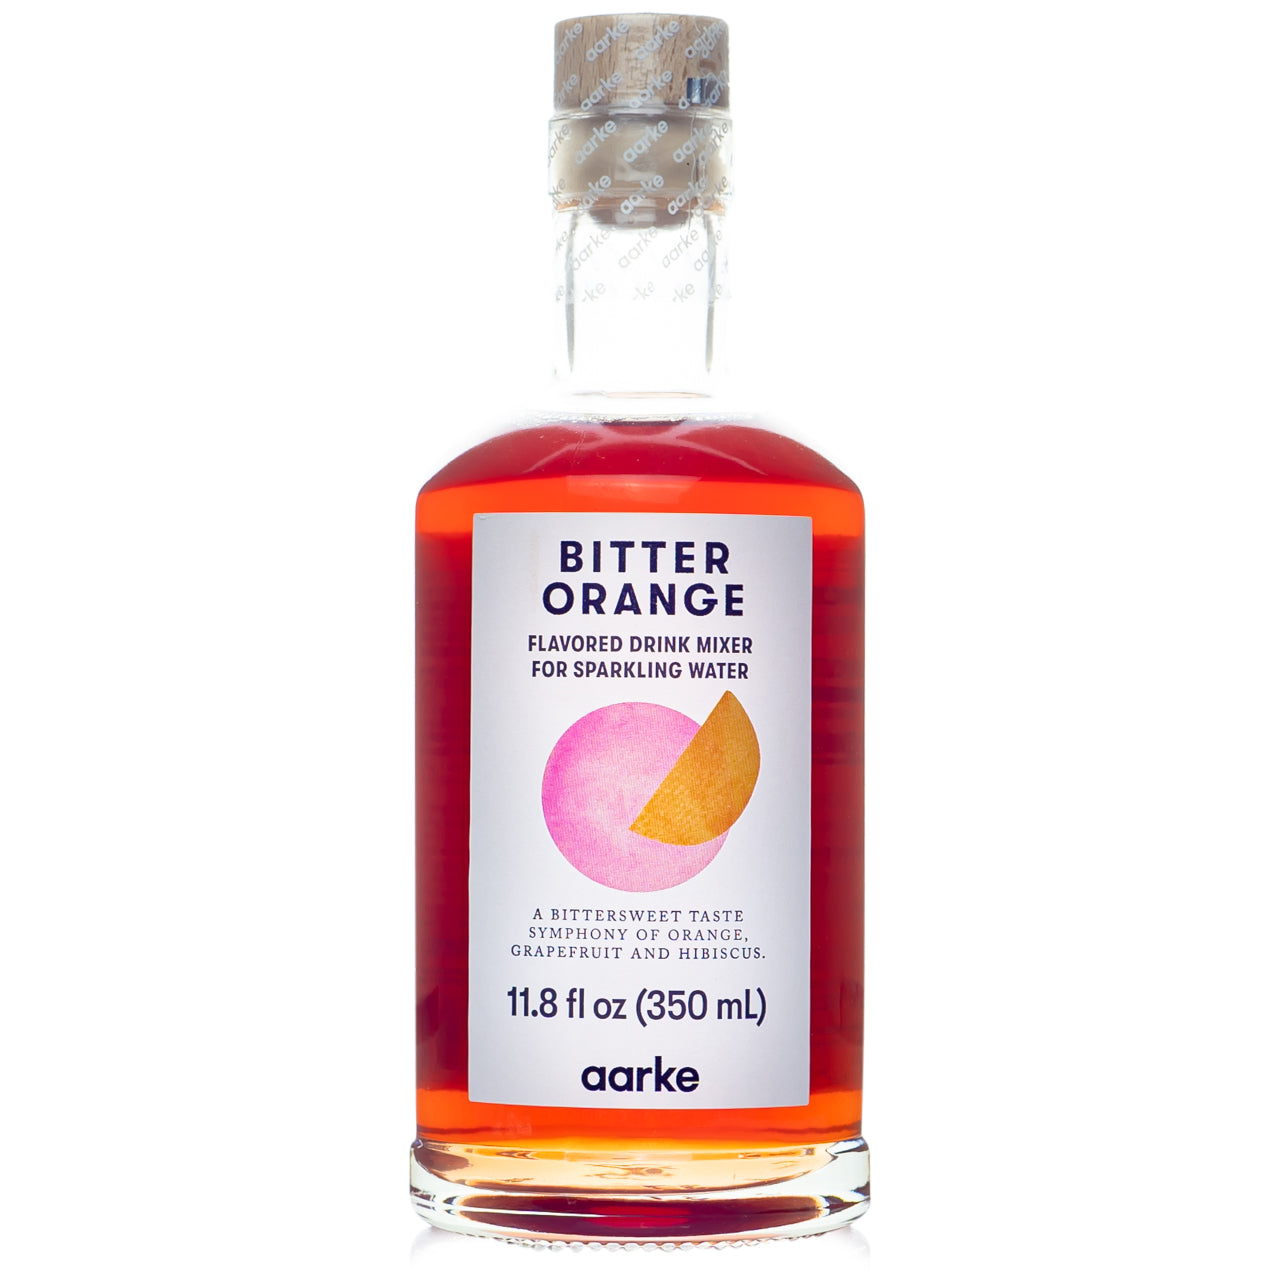 Aarke Bitter Orange Drink Mixer